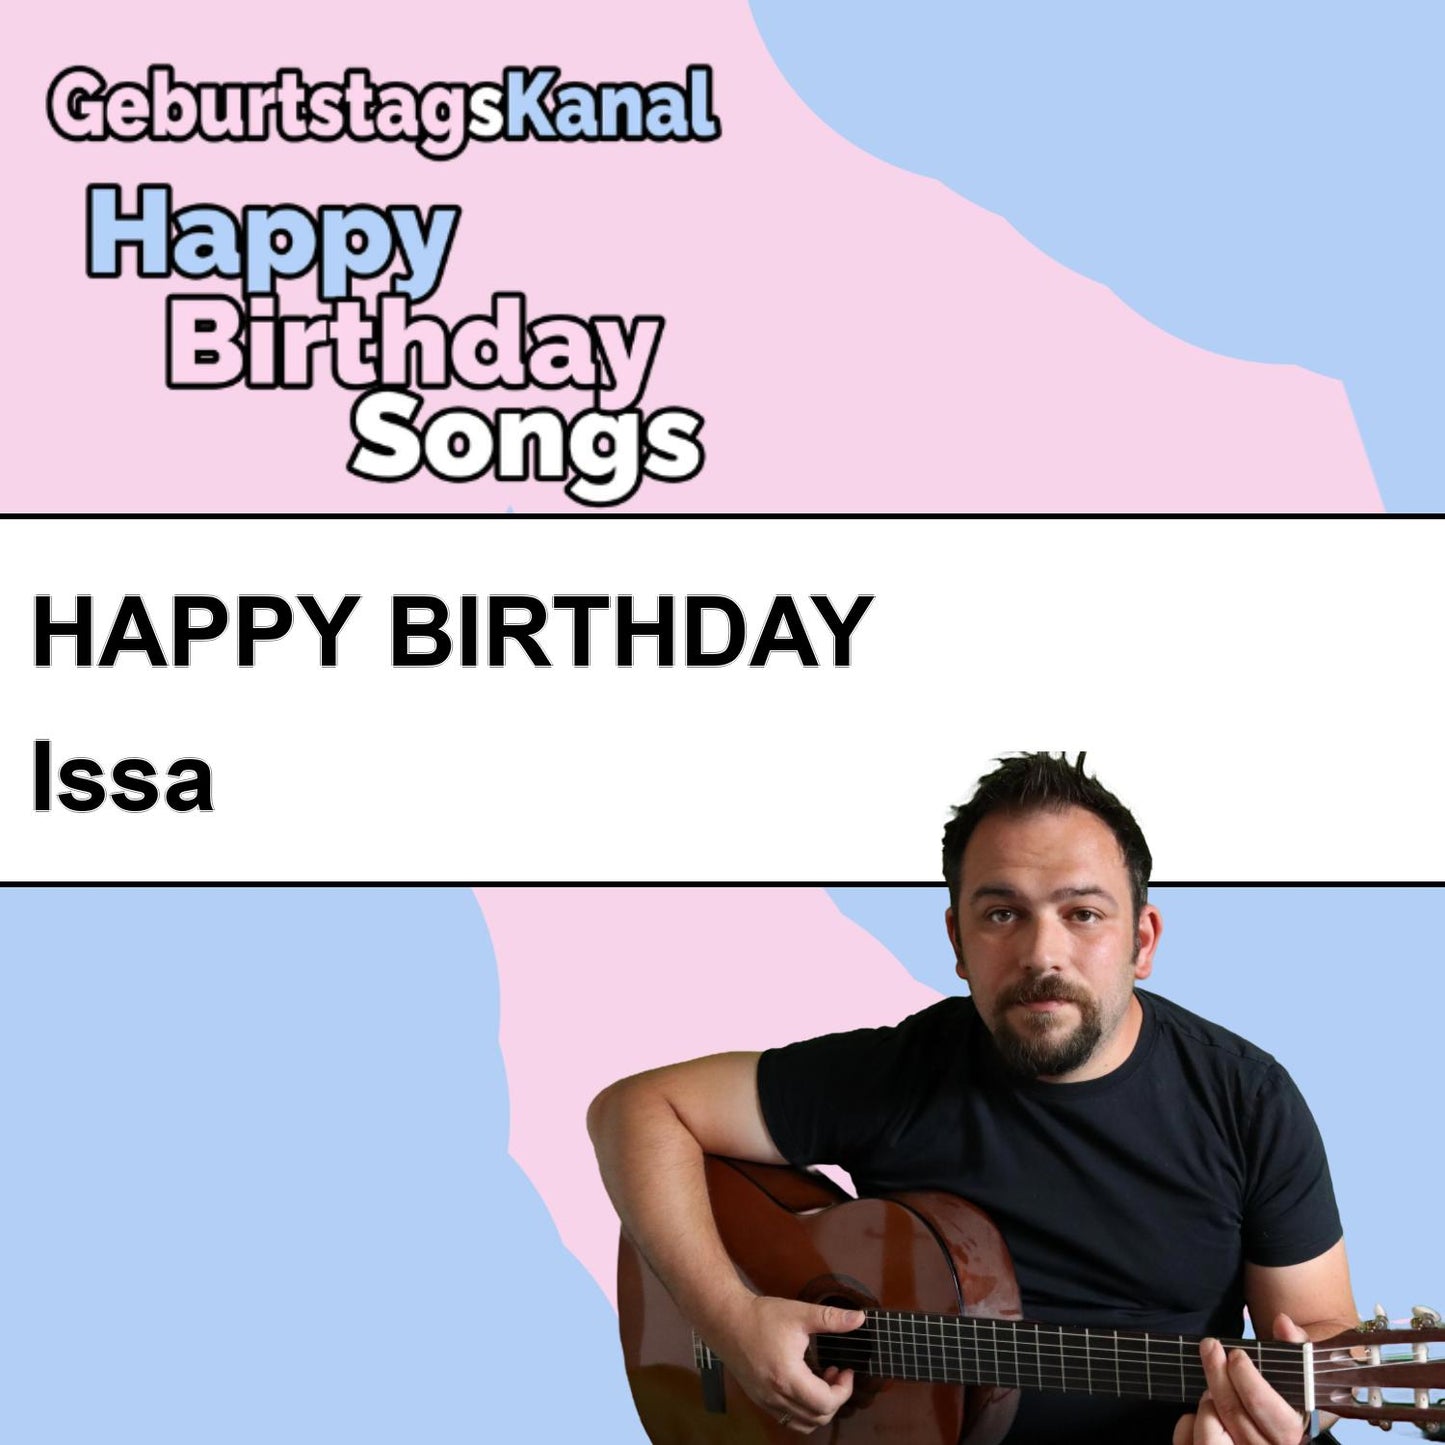 Produktbild Happy Birthday to you Issa mit Wunschgrußbotschaft